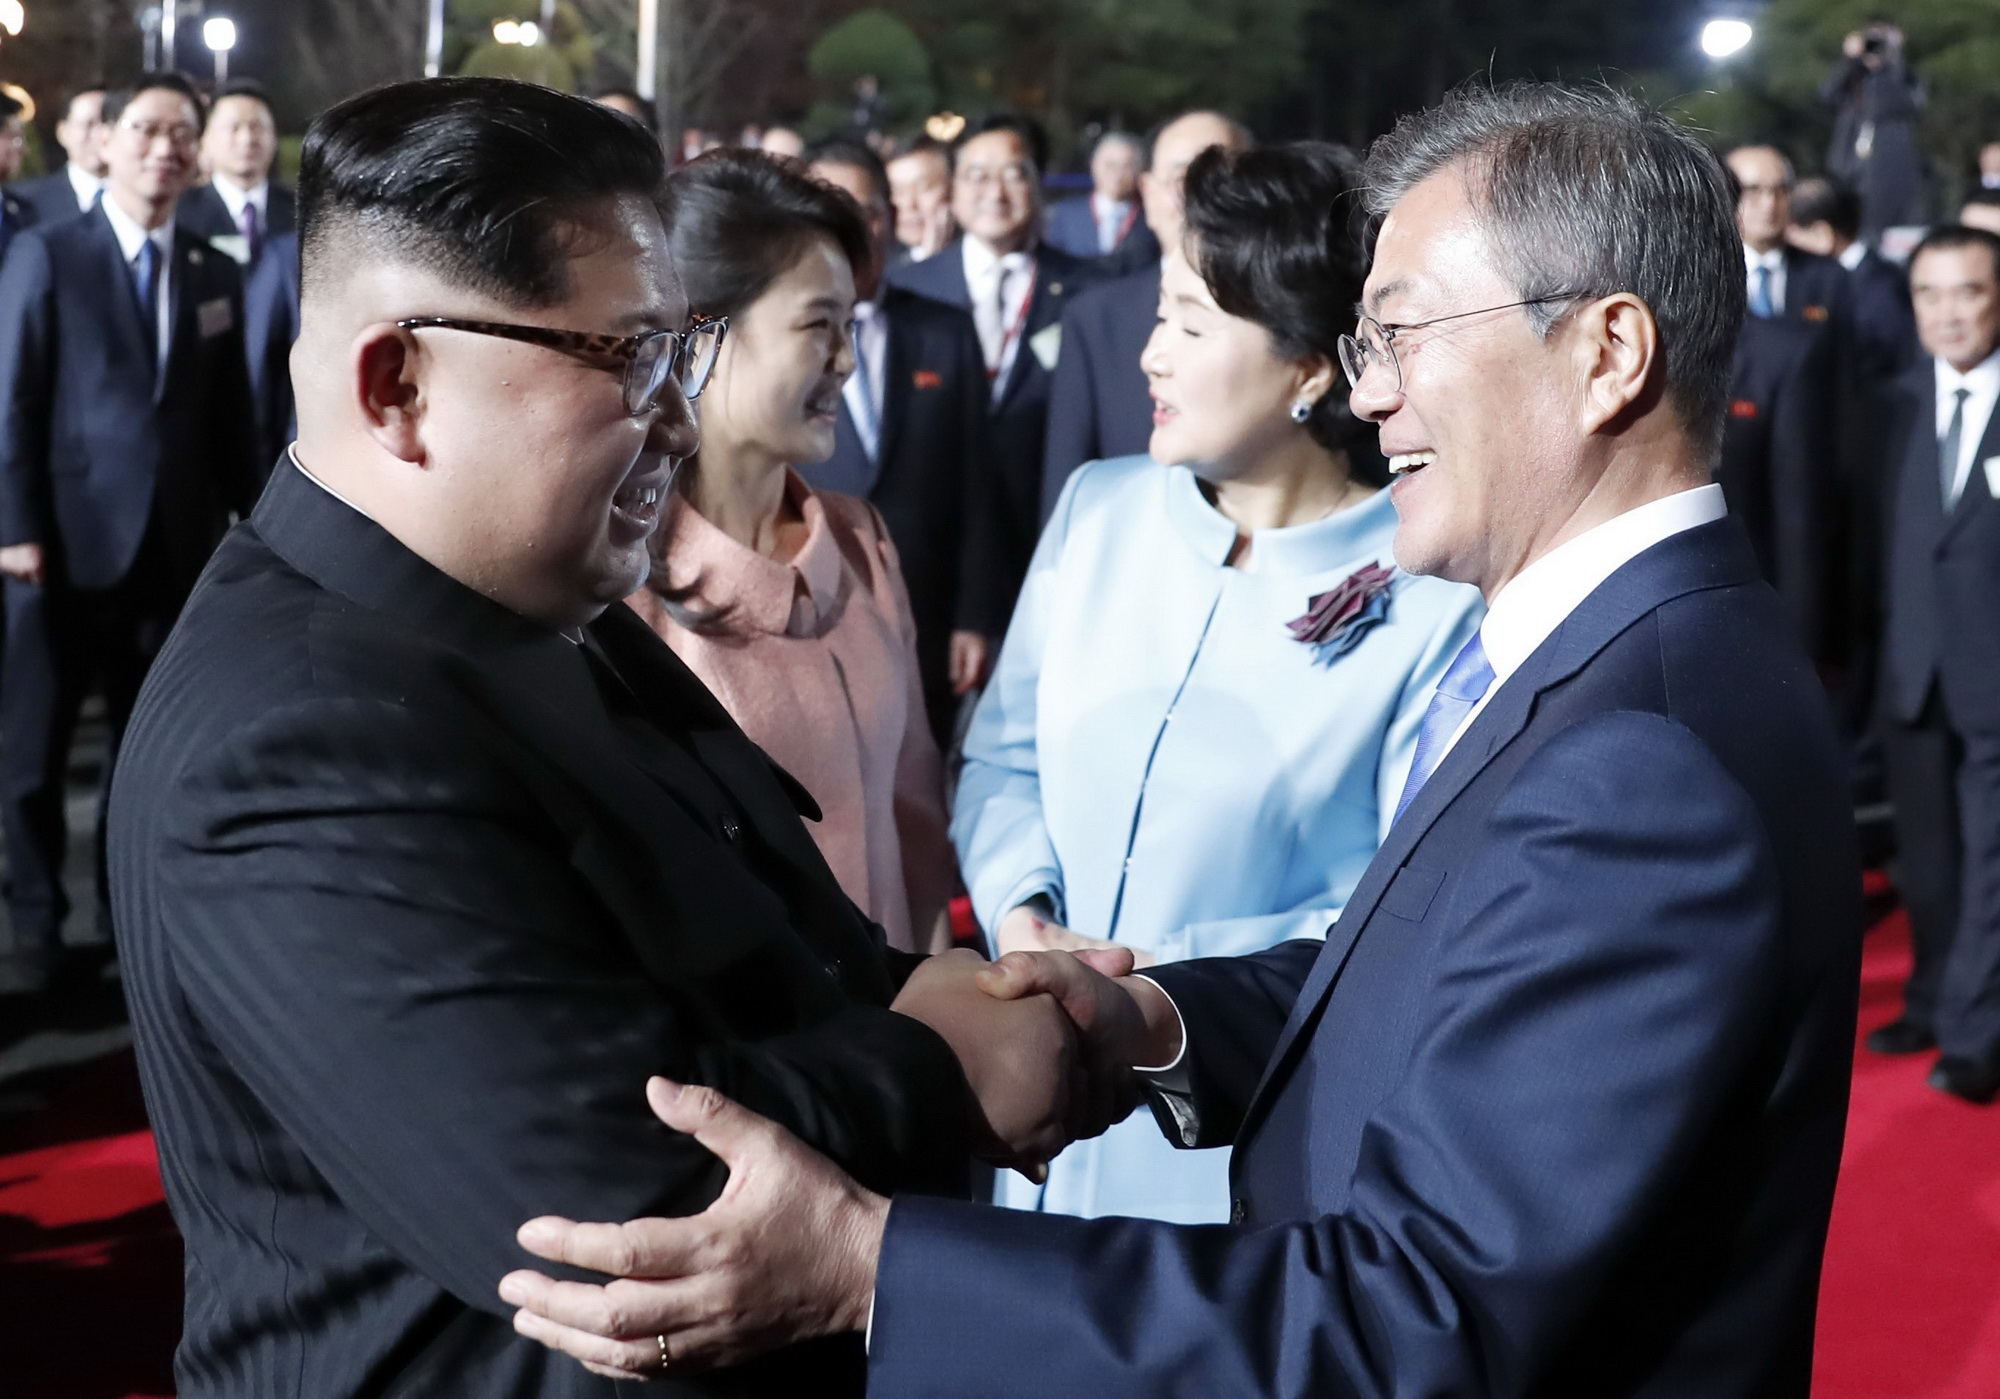 Nhà lãnh đạo Triều Tiên Kim Jong-un (trái) cùng phu nhân Ri Sol Ju (thứ 2, trái) và Tổng thống Hàn Quốc Moon Jae-in (phải) cùng phu nhân Kim Jung-sook (thứ 2, phải) chào từ biệt tại làng đình chiến Panmunjom tối 27/4. (Nguồn: Yonhap/TTXVN)